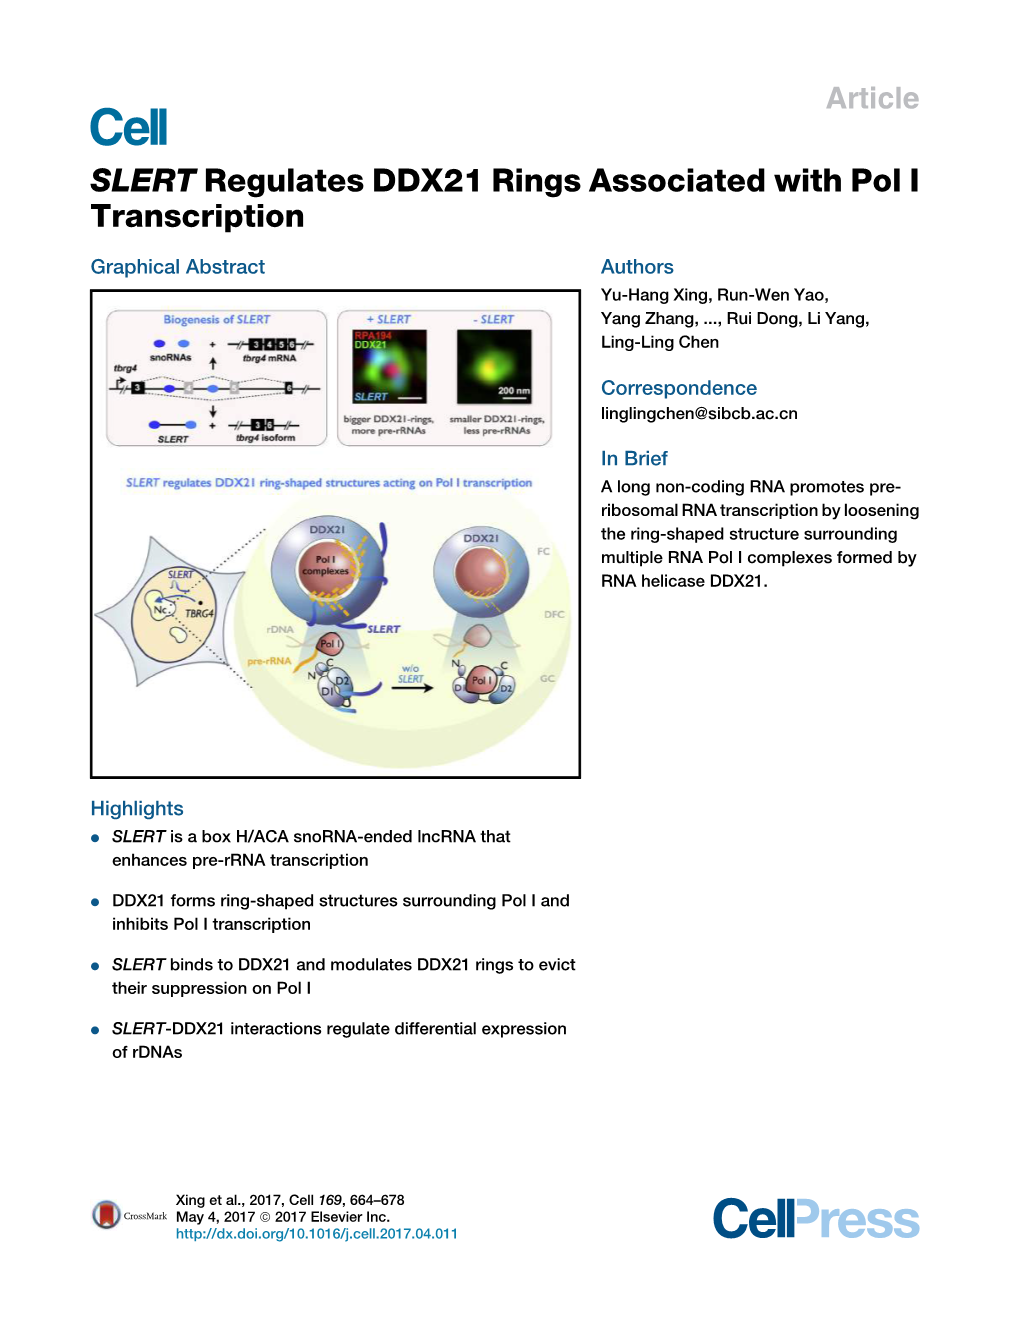 SLERT Regulates DDX21 Rings Associated with Pol I Transcription